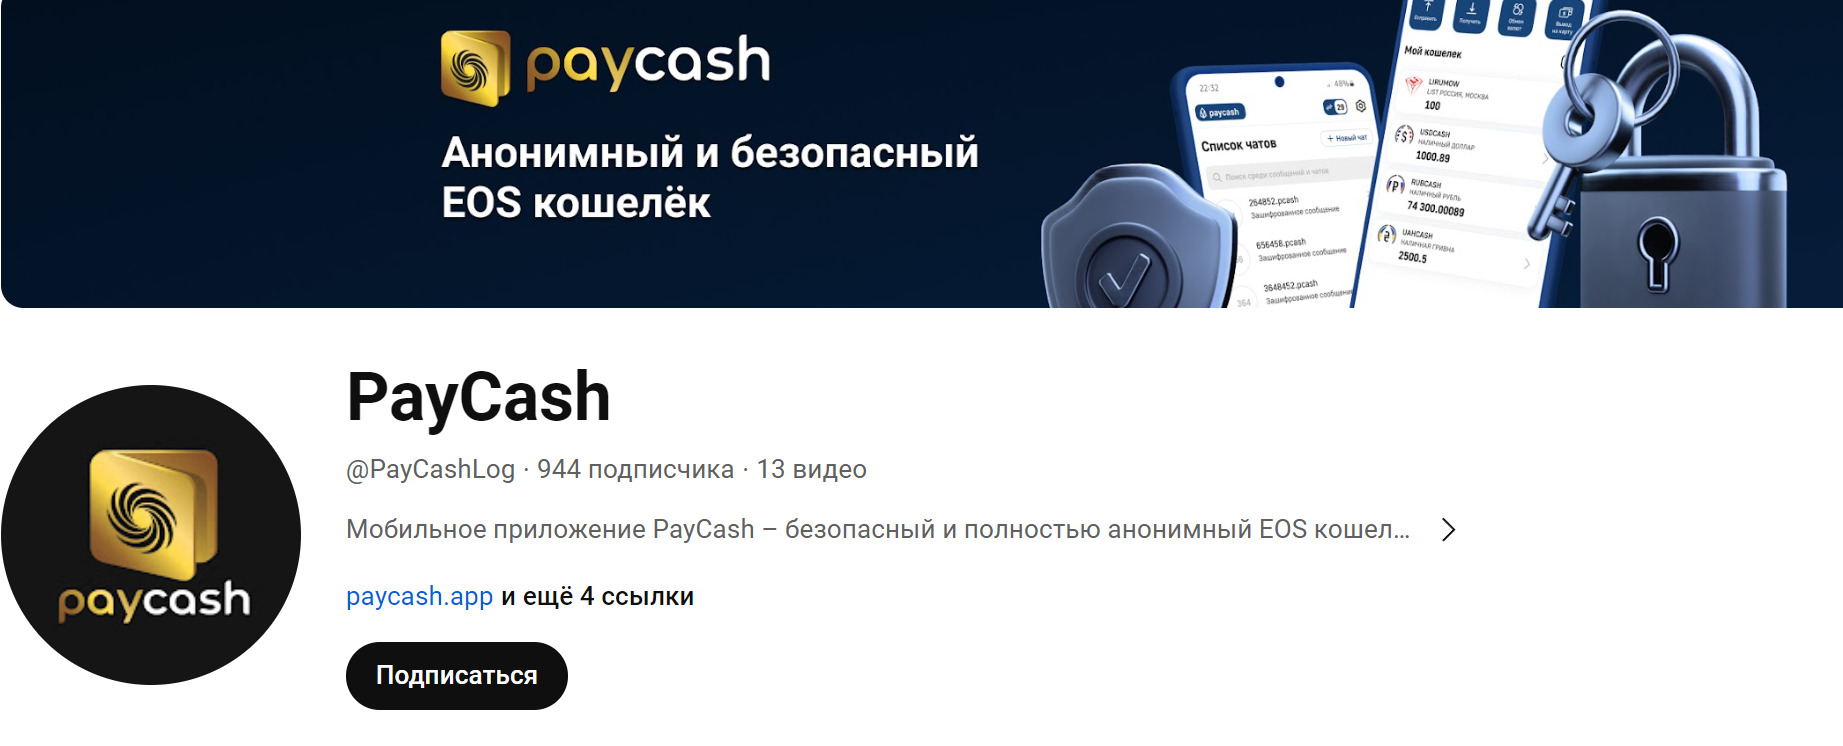 Ютуб сайта Paycash SWAP
